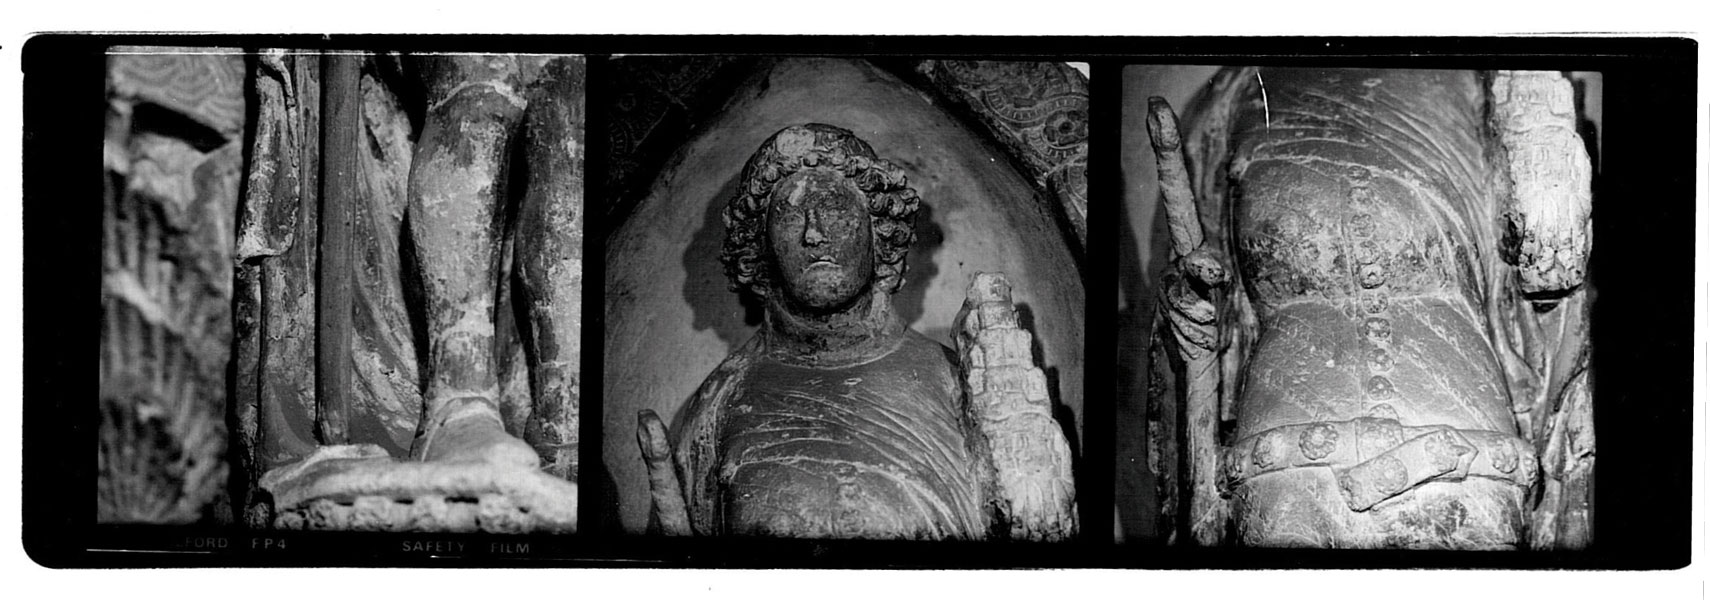 Alcune immagini del rilievo fotografico effettuato dallo scultore Mondazzi sulla statua originale per poter effettuare la copia intermedia, realizzata prima in creta e successivamente in gesso con la tecnica della “formatura”